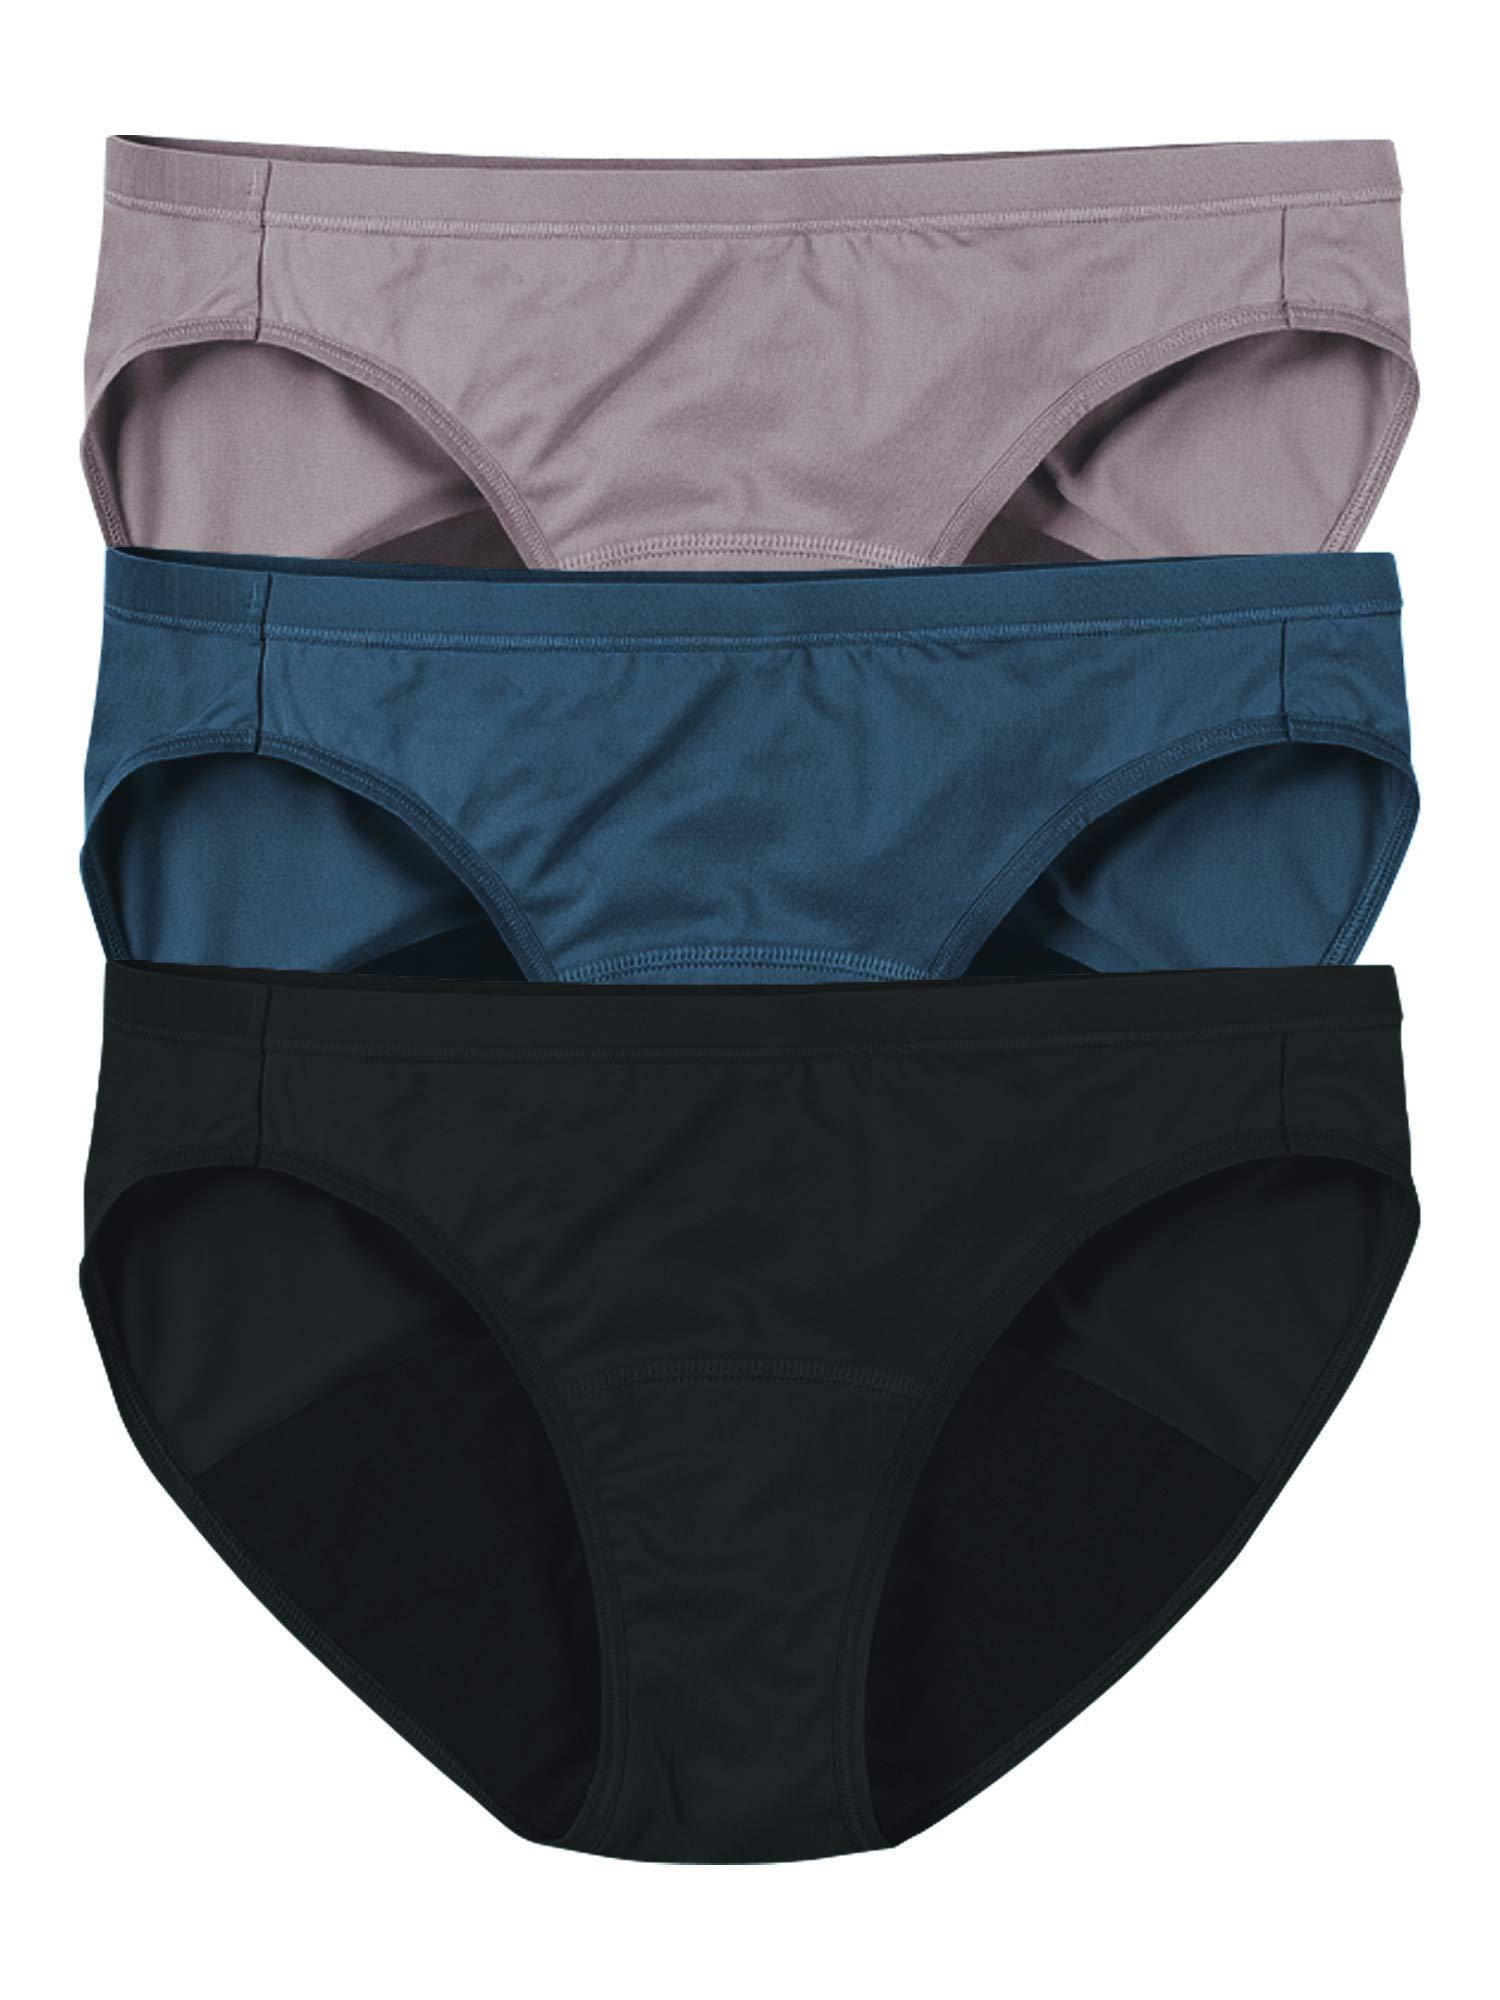 Hanes Comfort, Period. Women's Brief Period Underwear, Moderate